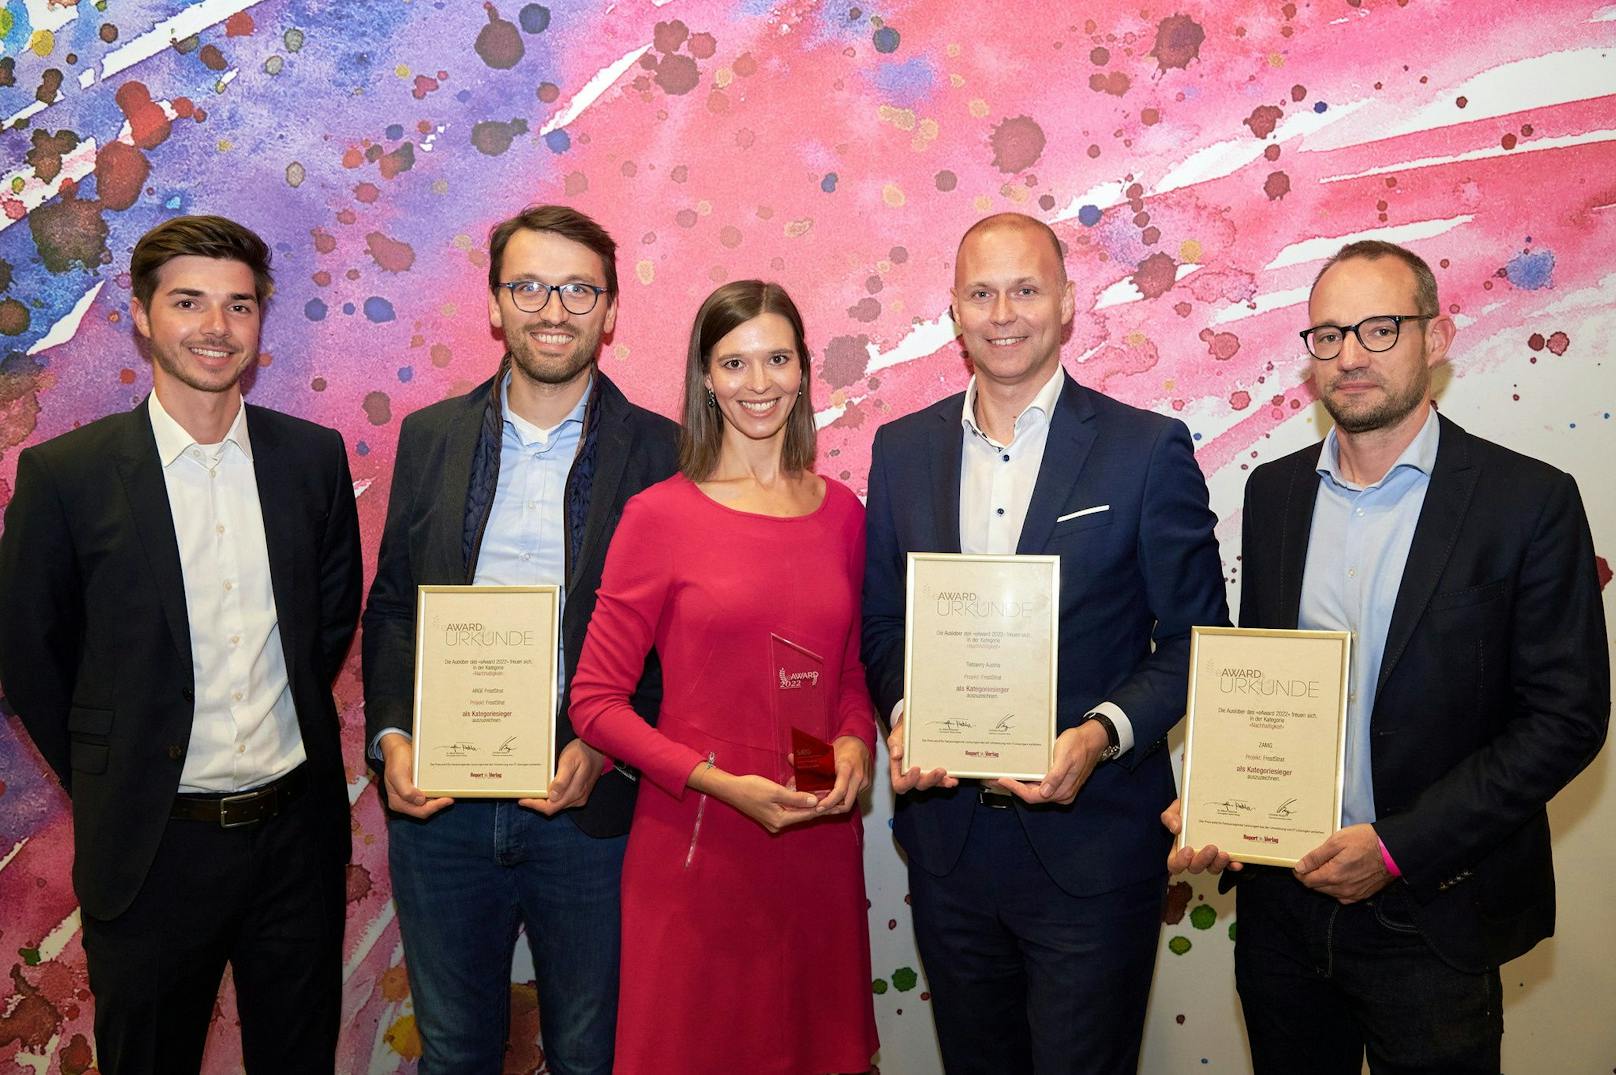 Tietoevry Austria gewinnt eAward und Microsoft "Partner of the Year Visionary Award" in Kategorie "Nachhaltigkeit".